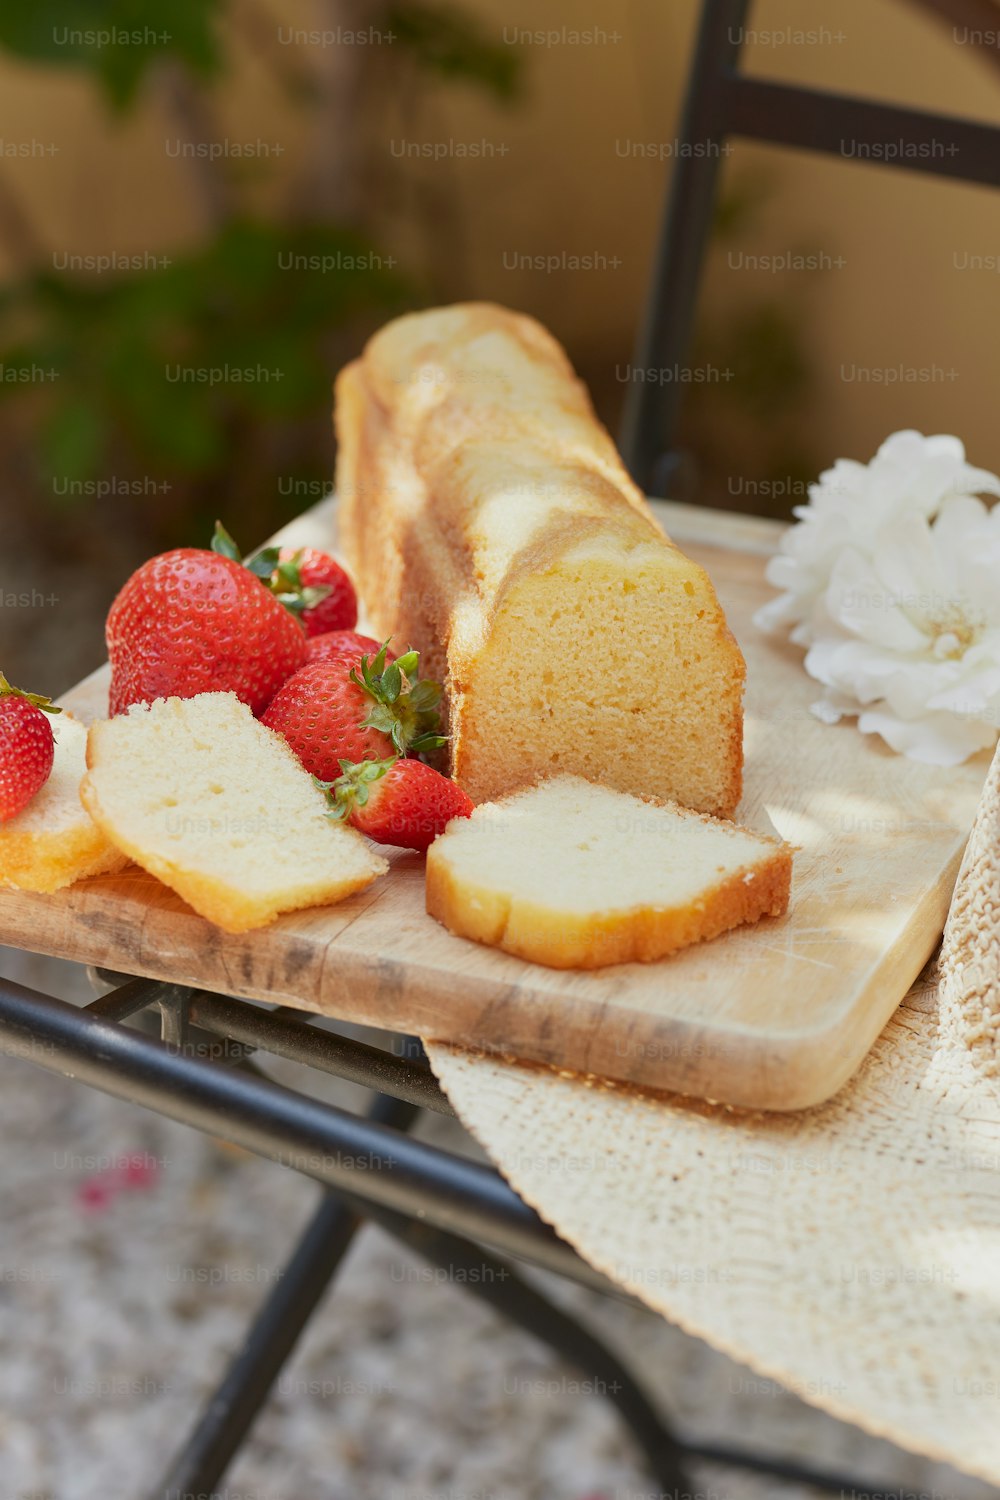 una mesa cubierta con una barra de pan y fresas en rodajas